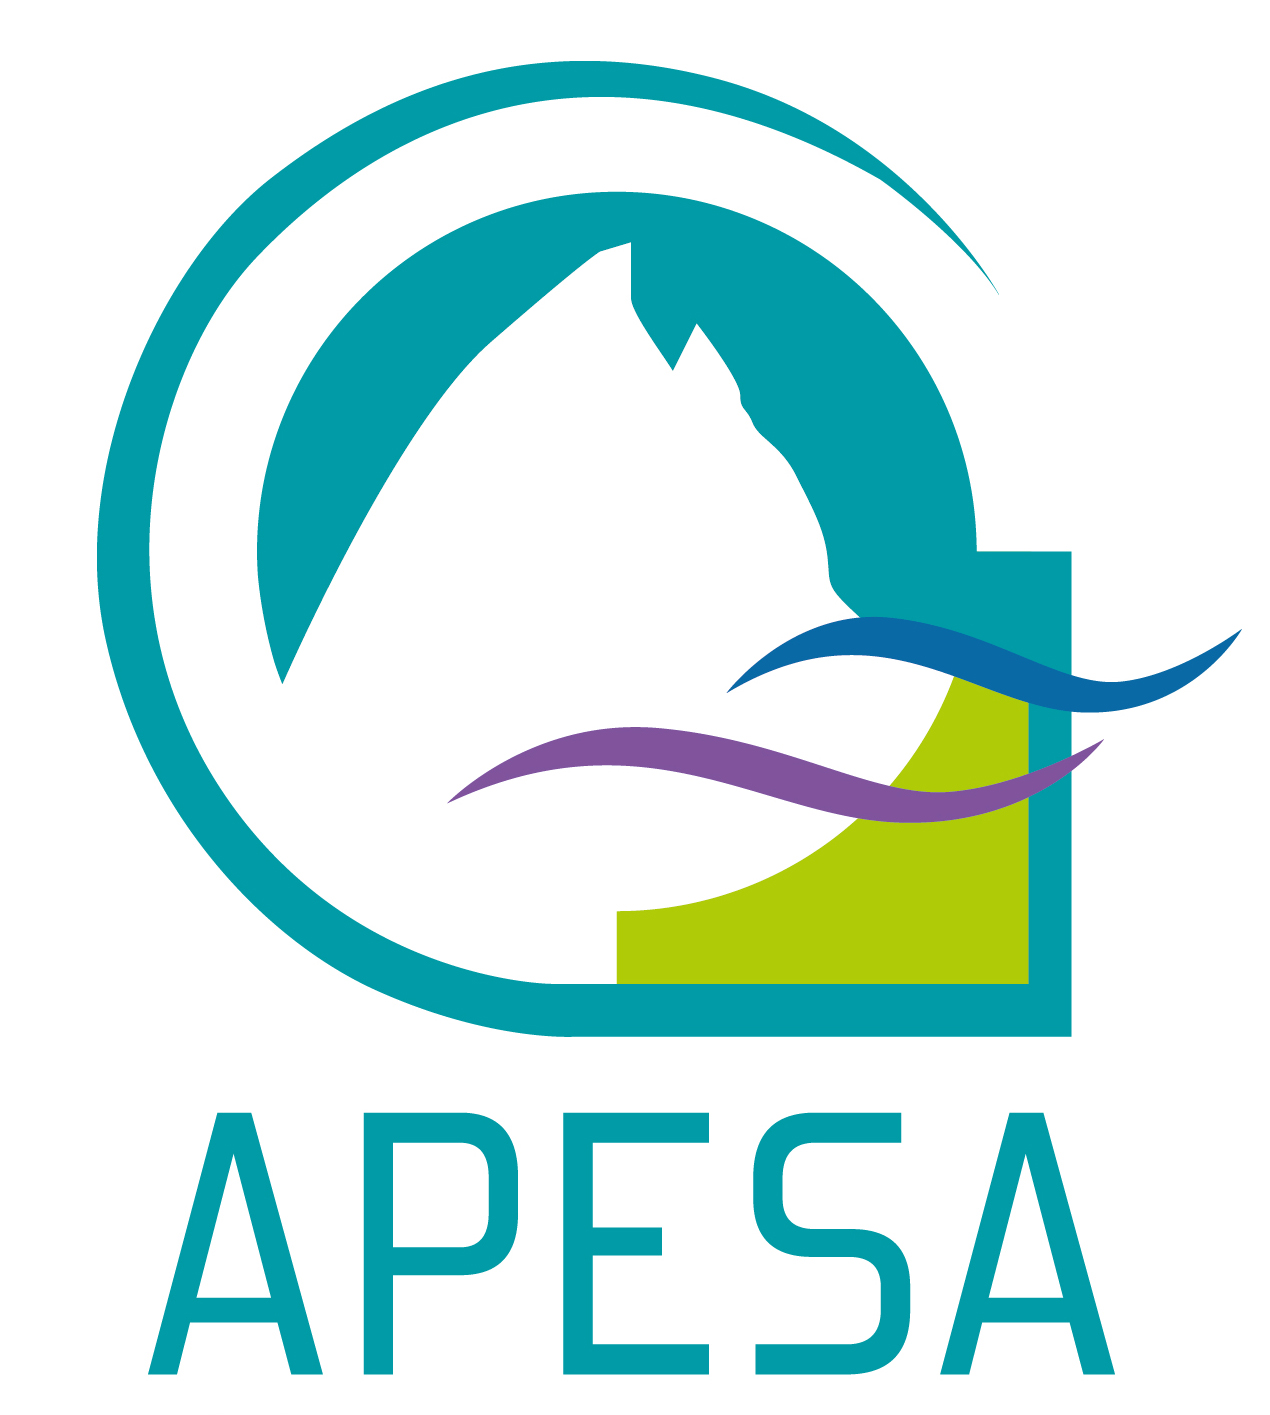 Logo adherent APESA